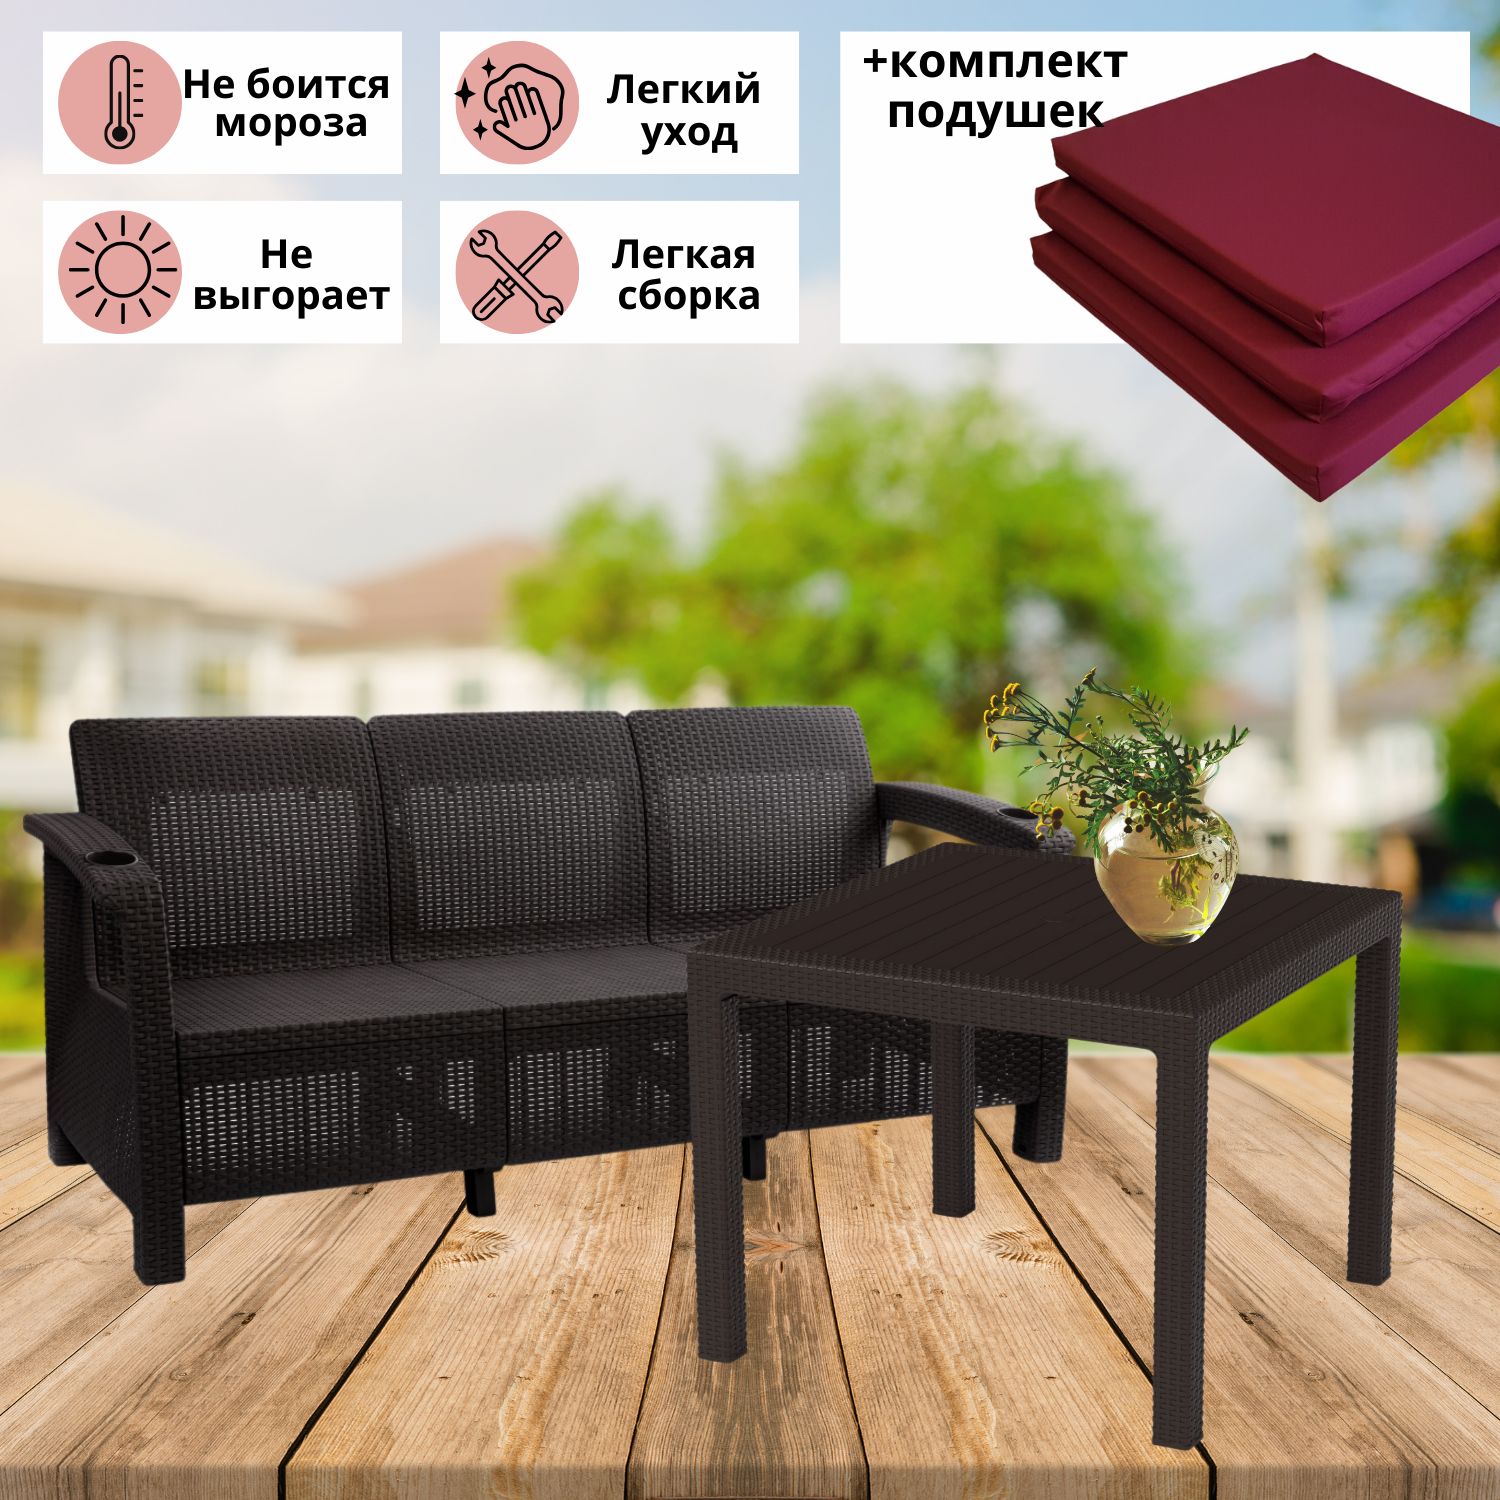 Комплект садовой мебели с подушками Альтернатива Фазенда-3 RT0448 диван и обеденный стол